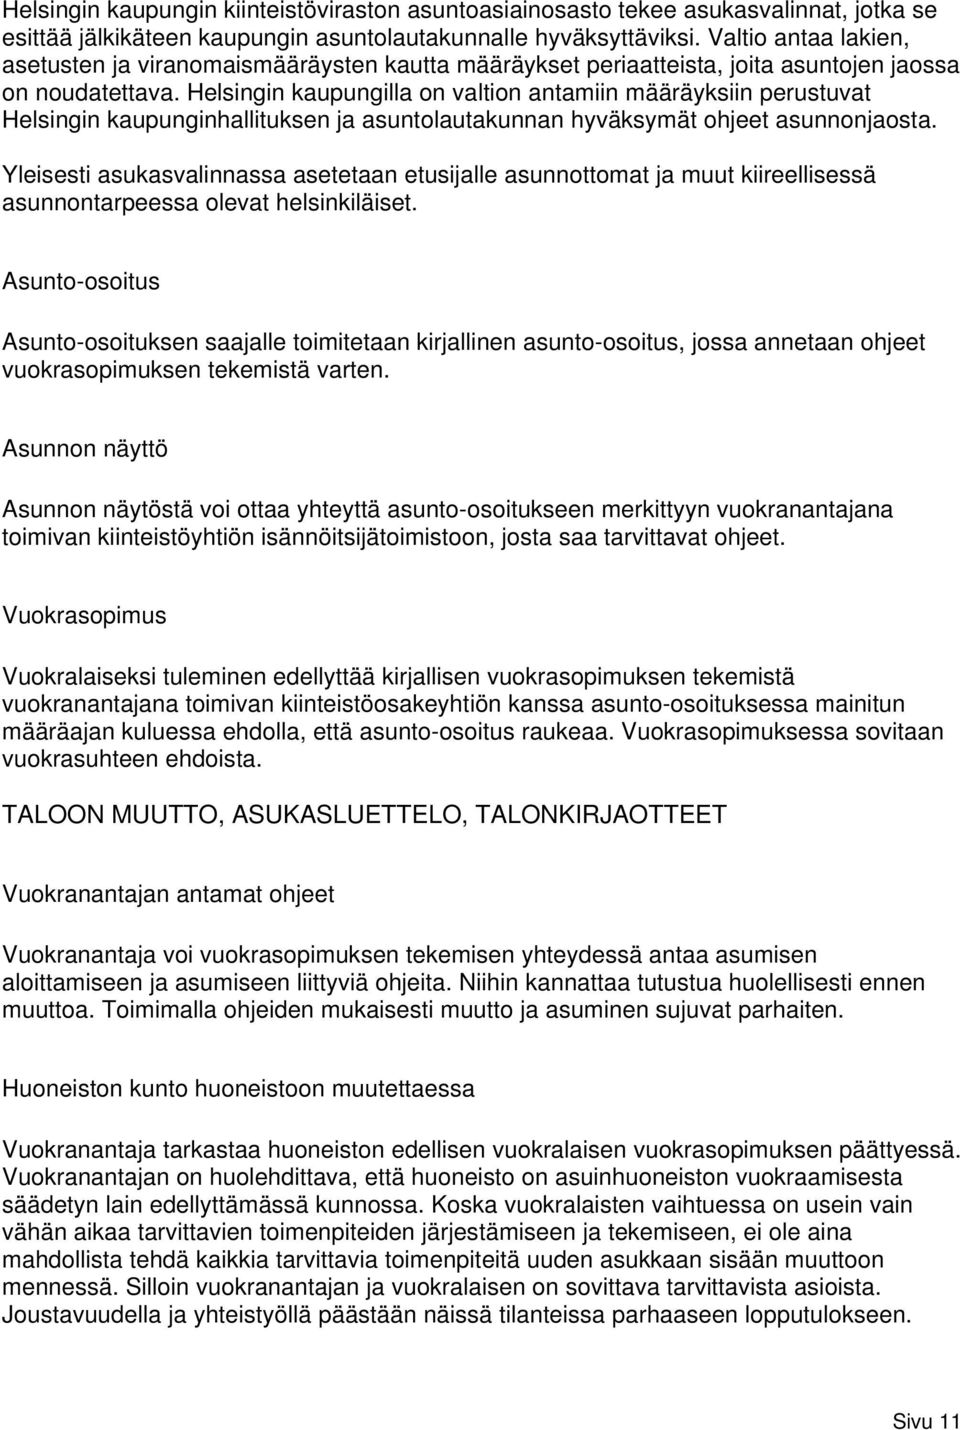 Helsingin kaupungilla on valtion antamiin määräyksiin perustuvat Helsingin kaupunginhallituksen ja asuntolautakunnan hyväksymät ohjeet asunnonjaosta.